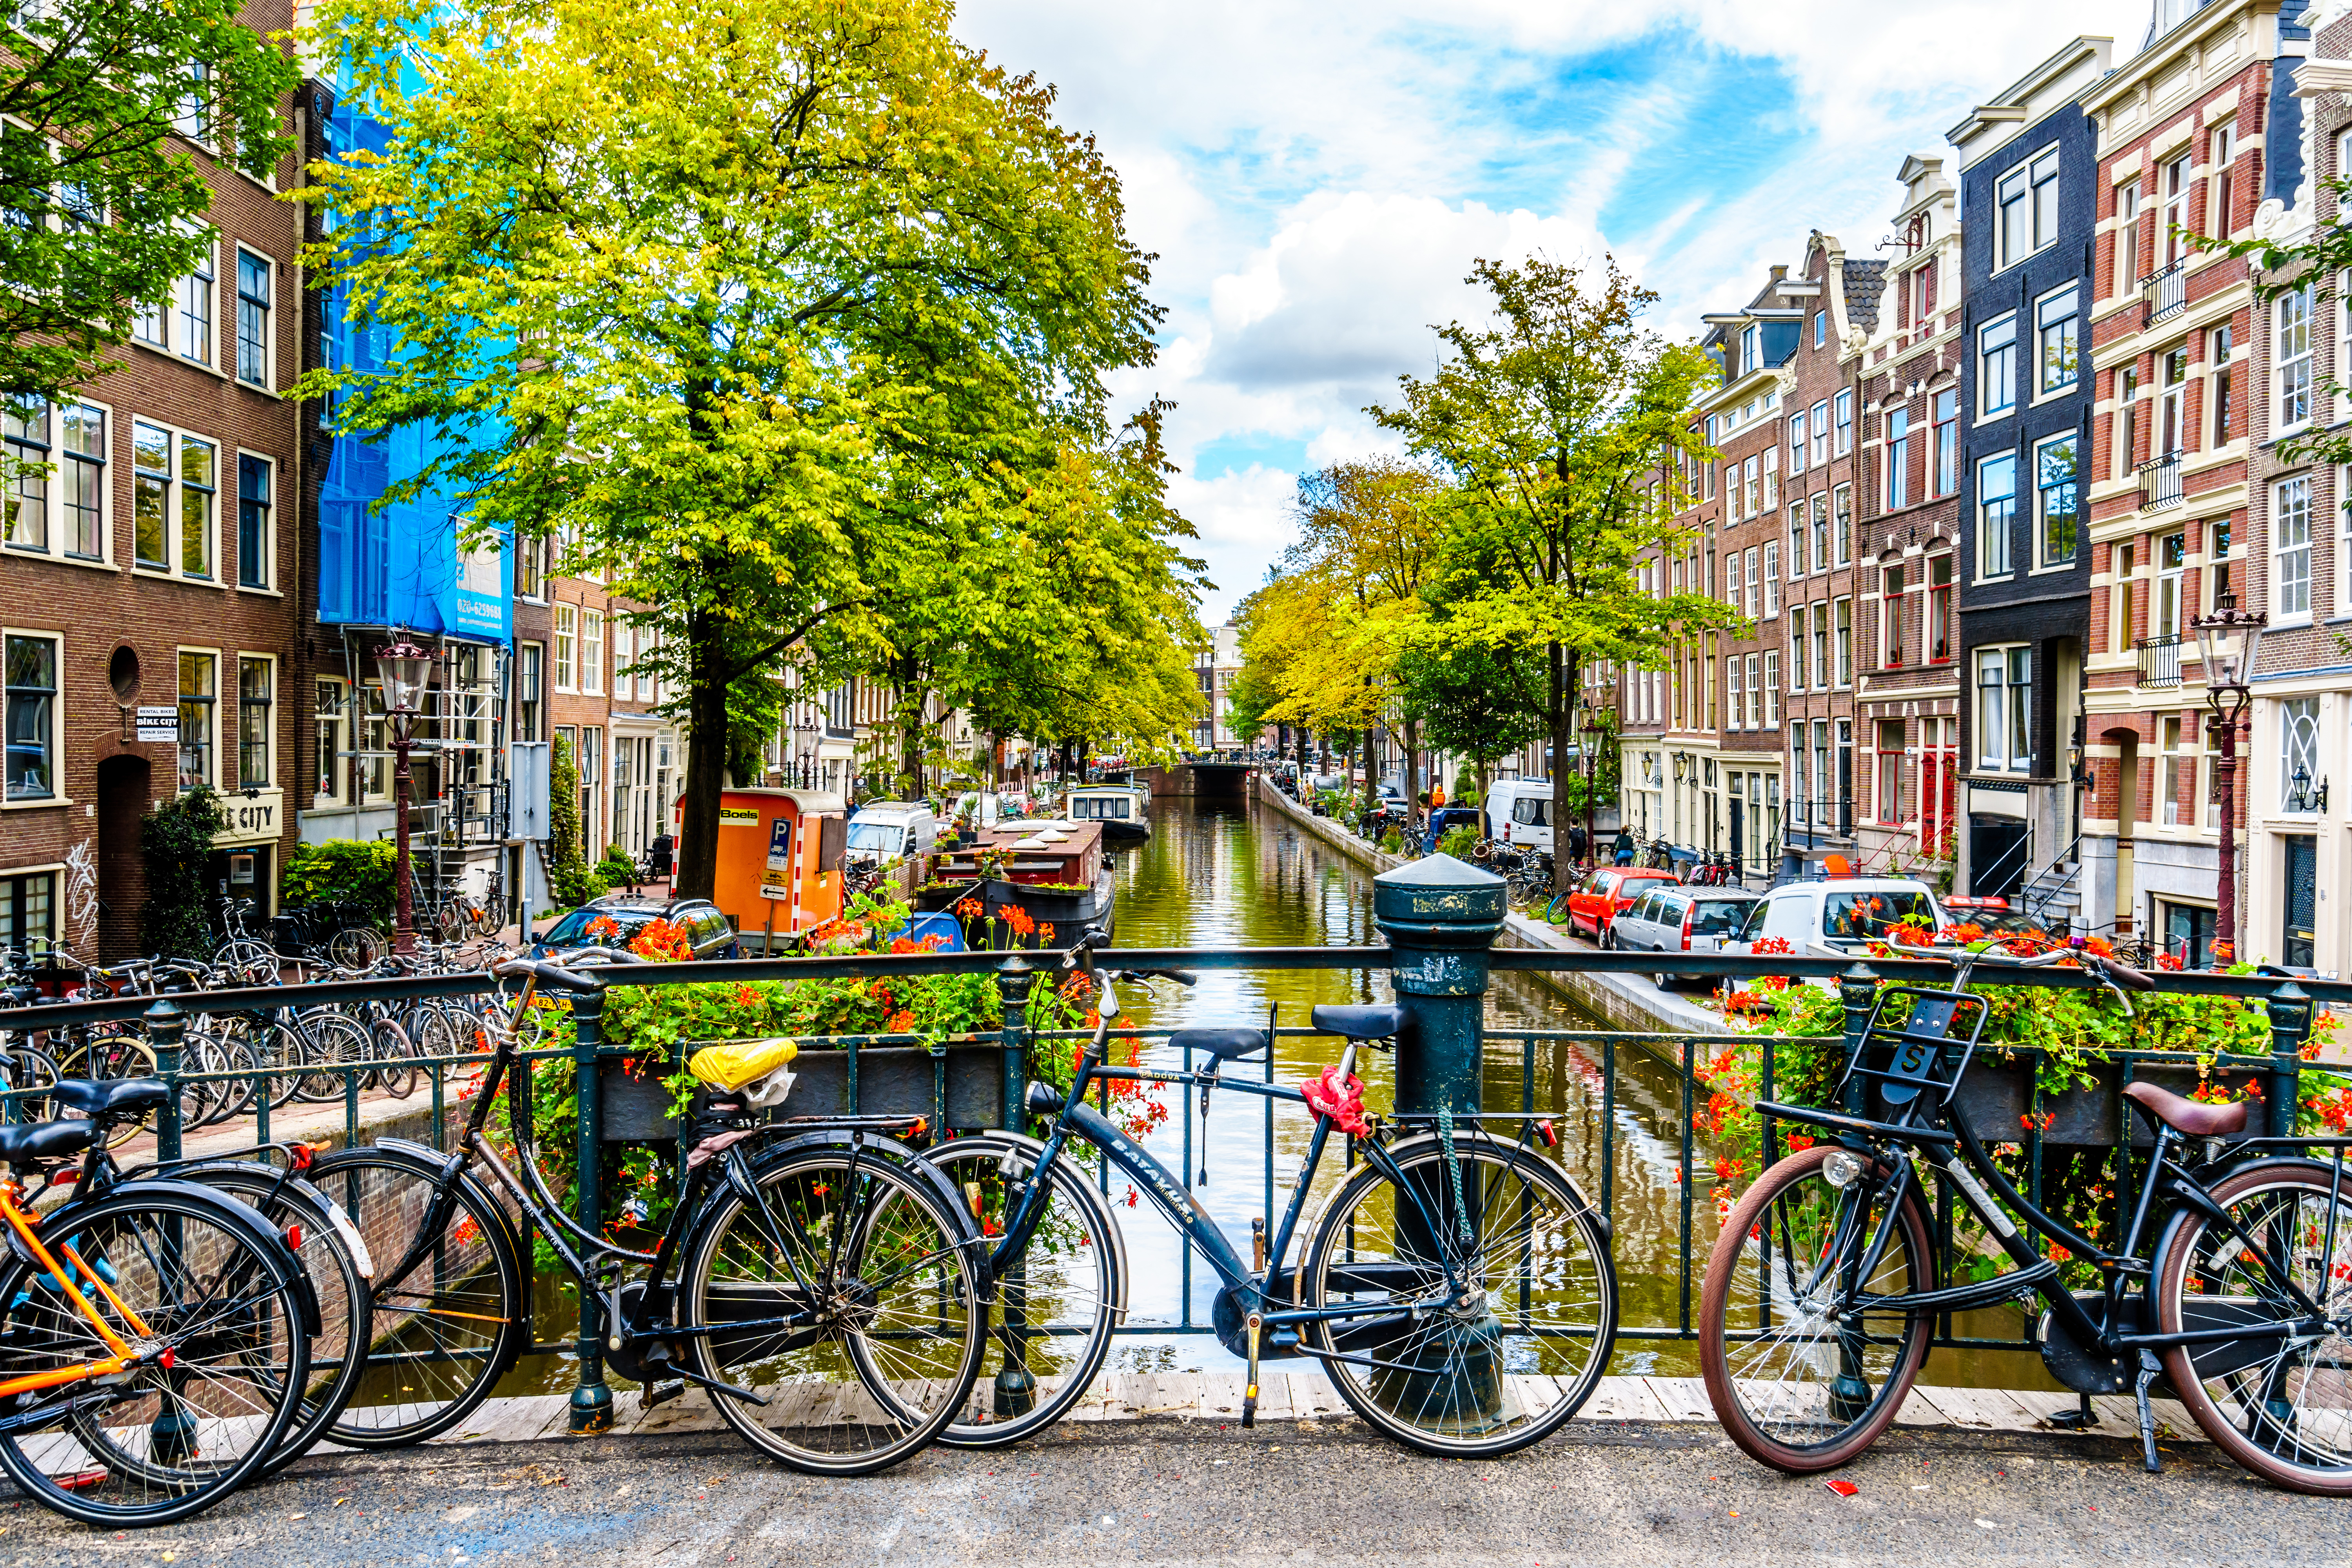 Амстердам - столица Нидерландов, ПМЖ которых могут получить иностранцы